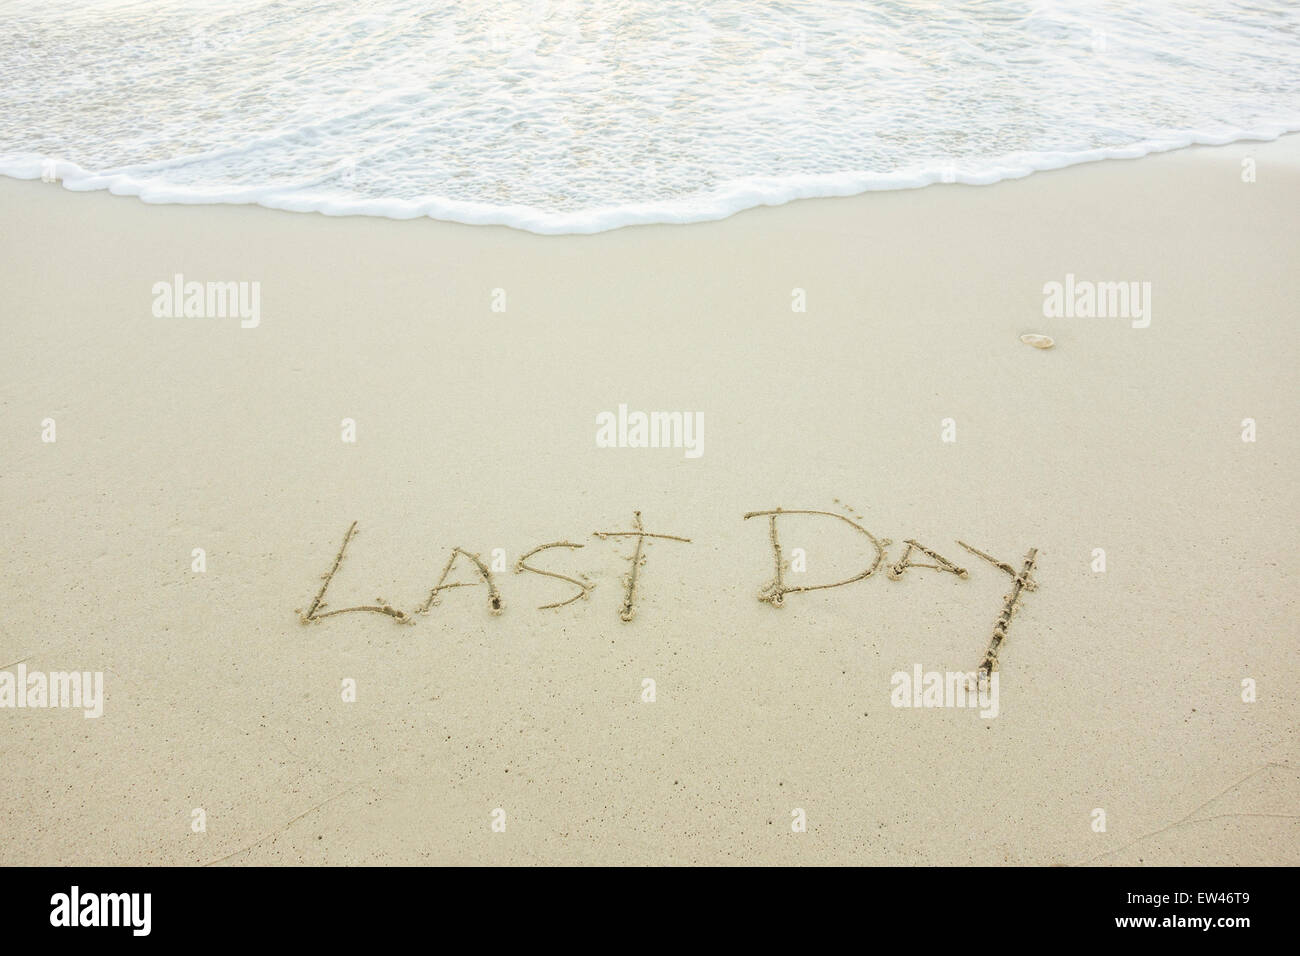 Un message, dernier jour, écrit dans le sable sur la plage d'une île tropicale. Notion de tristesse. Banque D'Images